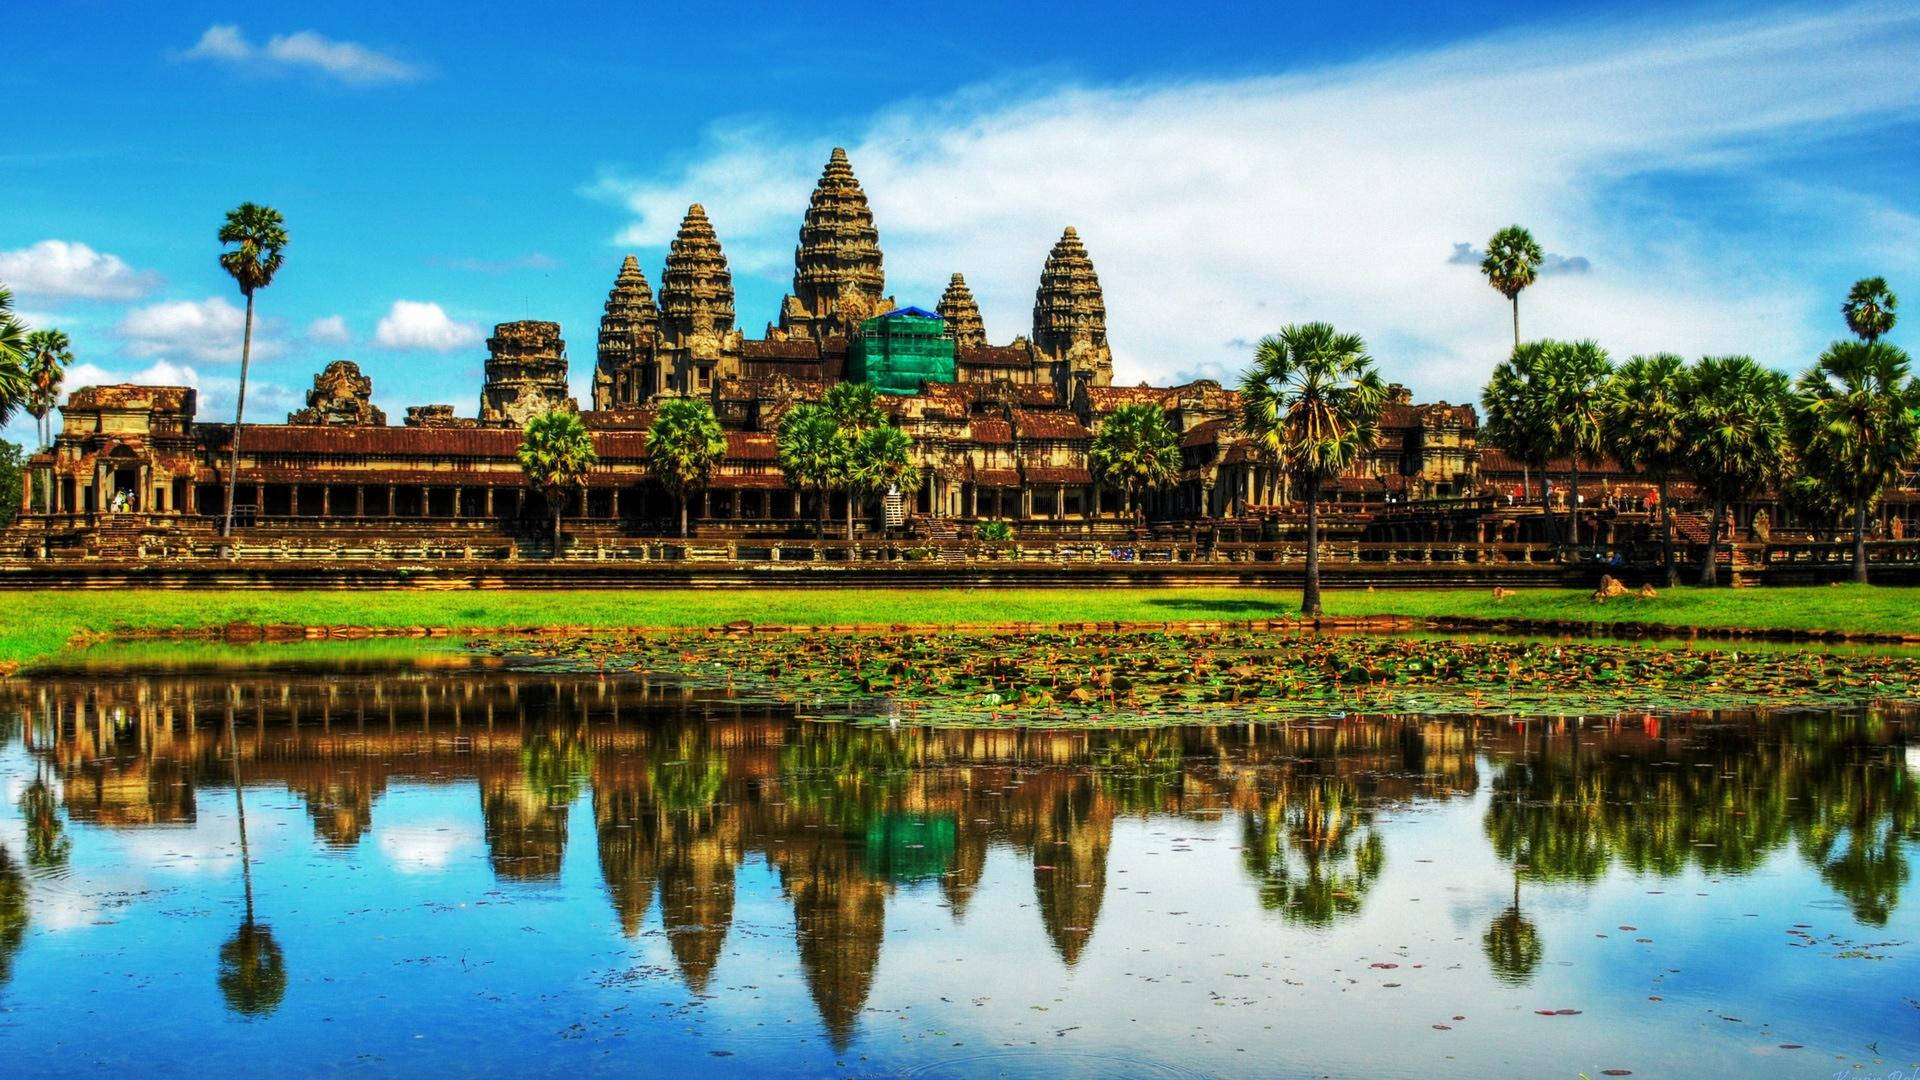 Angkor Wat Thailand Wallpaper